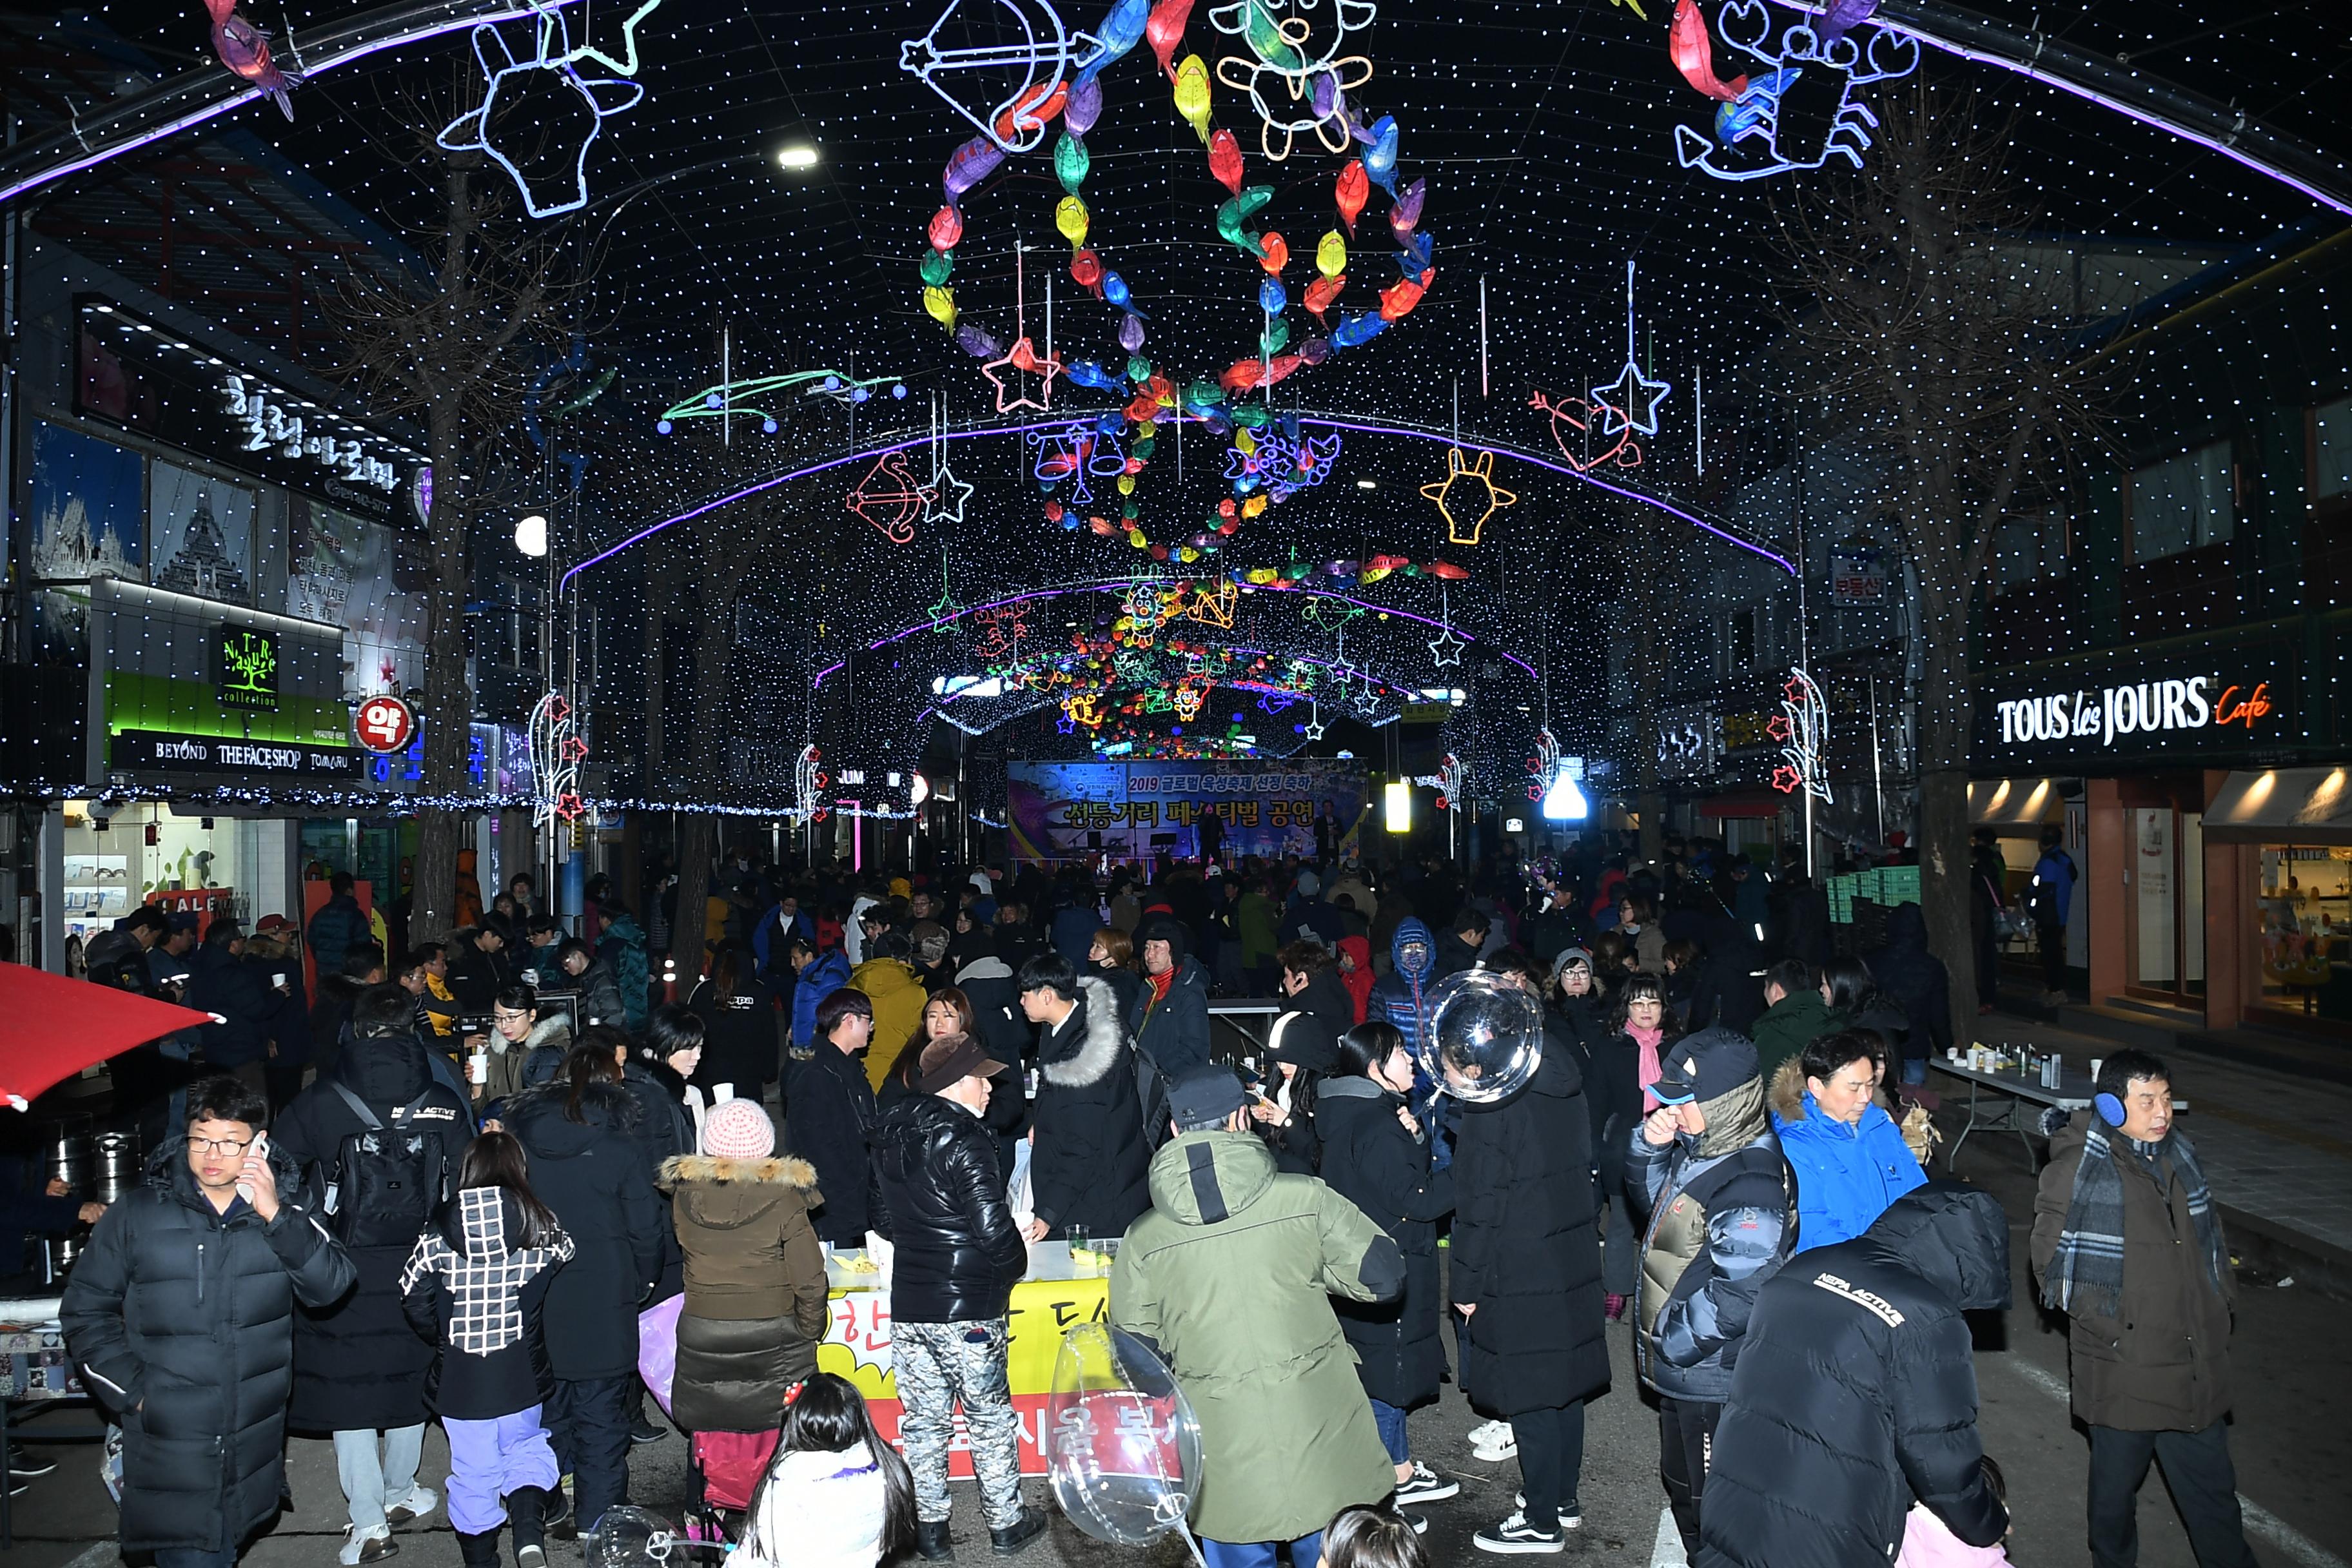 2019 화천산천어축제 선등거리 공연 전경 의 사진